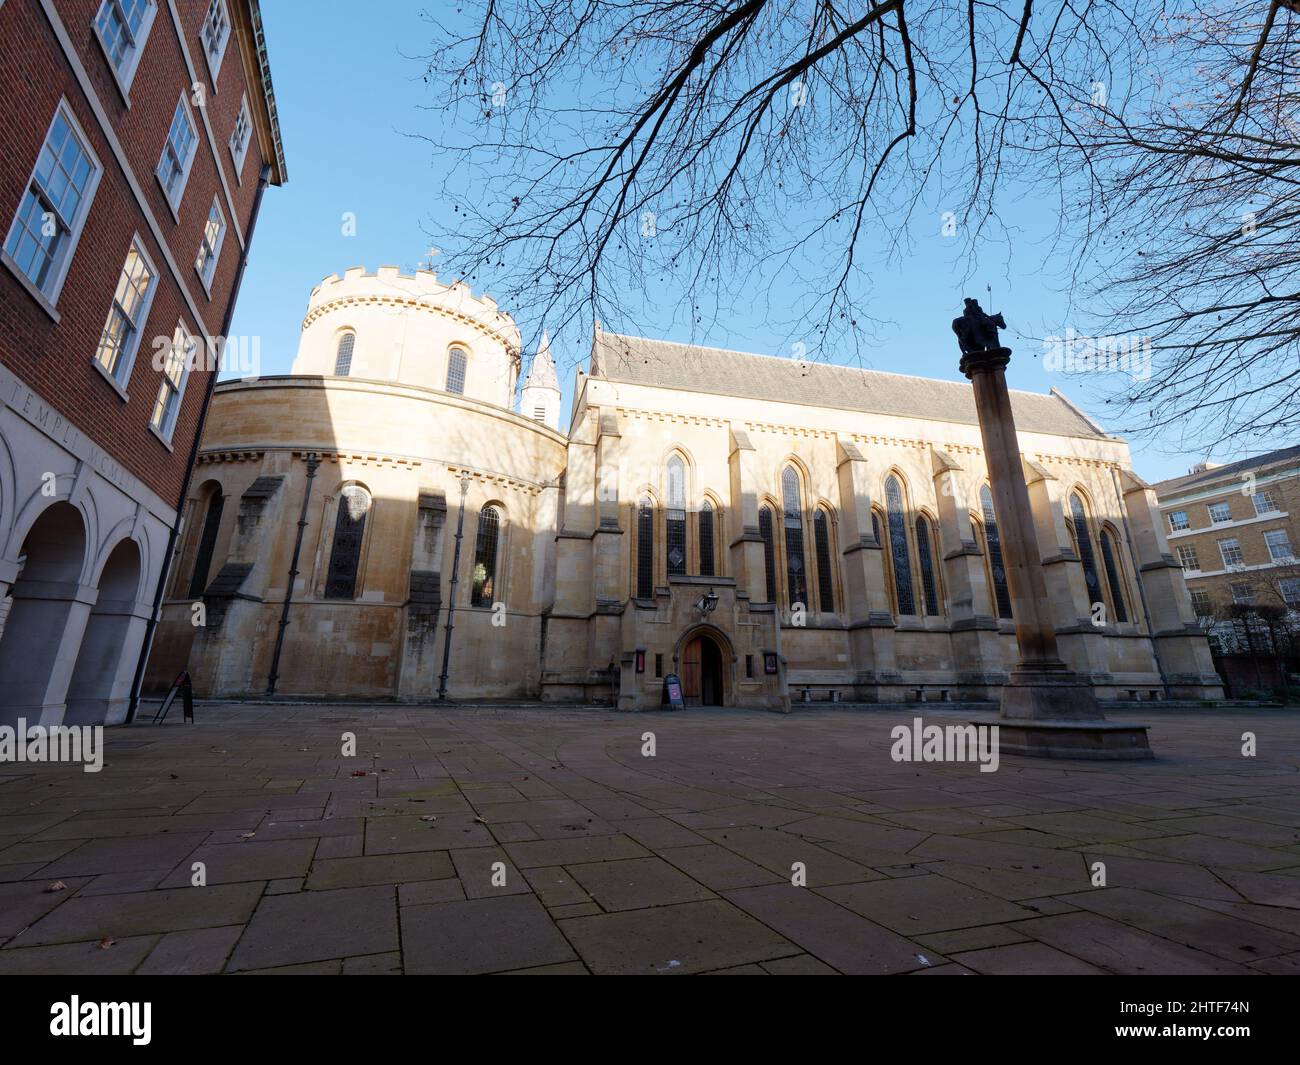 Londres, Grand Londres, Angleterre, janvier 05 2022 : vue latérale avec entrée de l'église du Temple construite par les Templiers. Banque D'Images